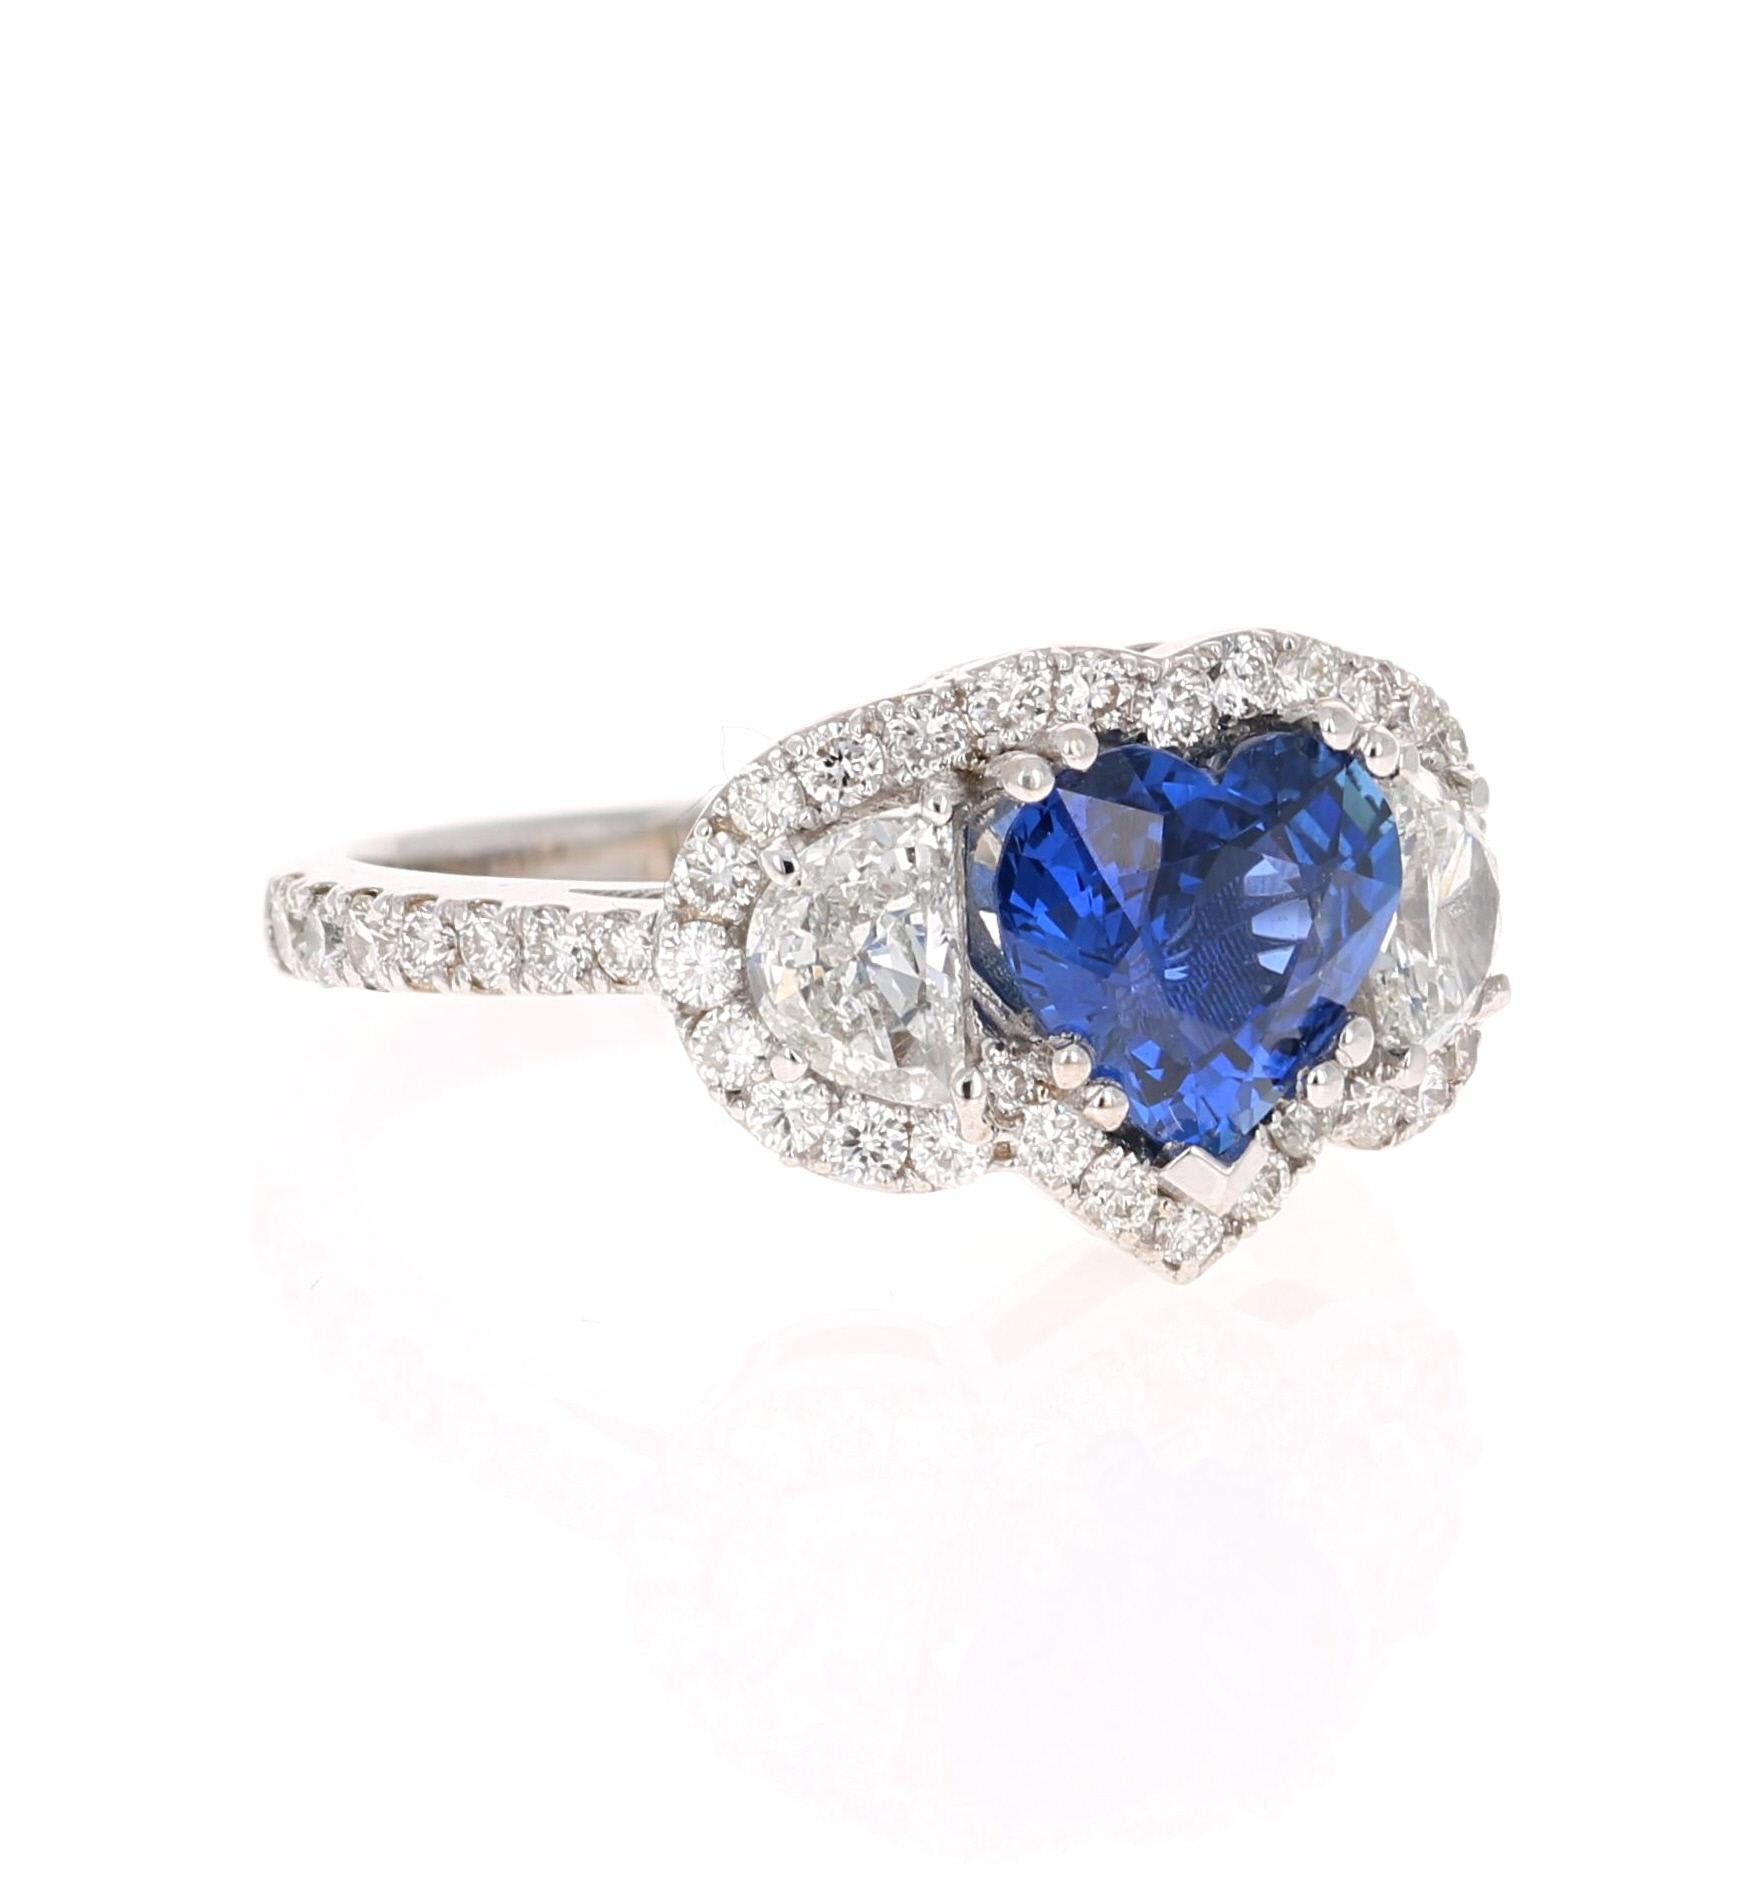 Dieser Ring hat einen wunderschönen blauen Saphir im Herzschliff, der 1,93 Karat wiegt und vom GIA zertifiziert ist. Der Saphir ist ein natürlicher blauer Herzschliff mit Erhitzung gemäß den Industrienormen. Die GIA-Zertifikatsnummer lautet: